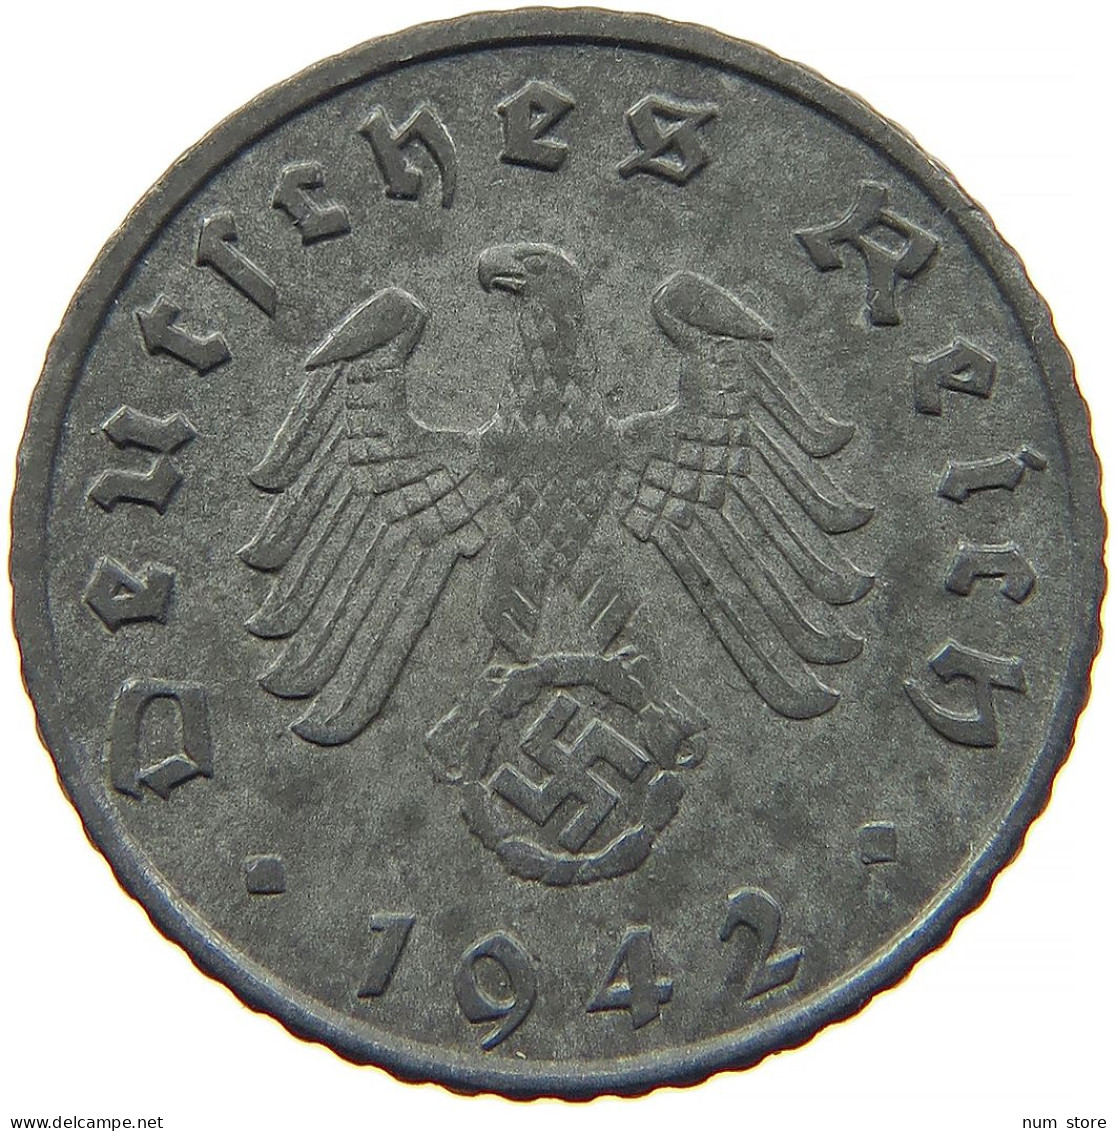 GERMANY 5 REICHSPFENNIG 1942 A #s091 0967 - 5 Reichspfennig